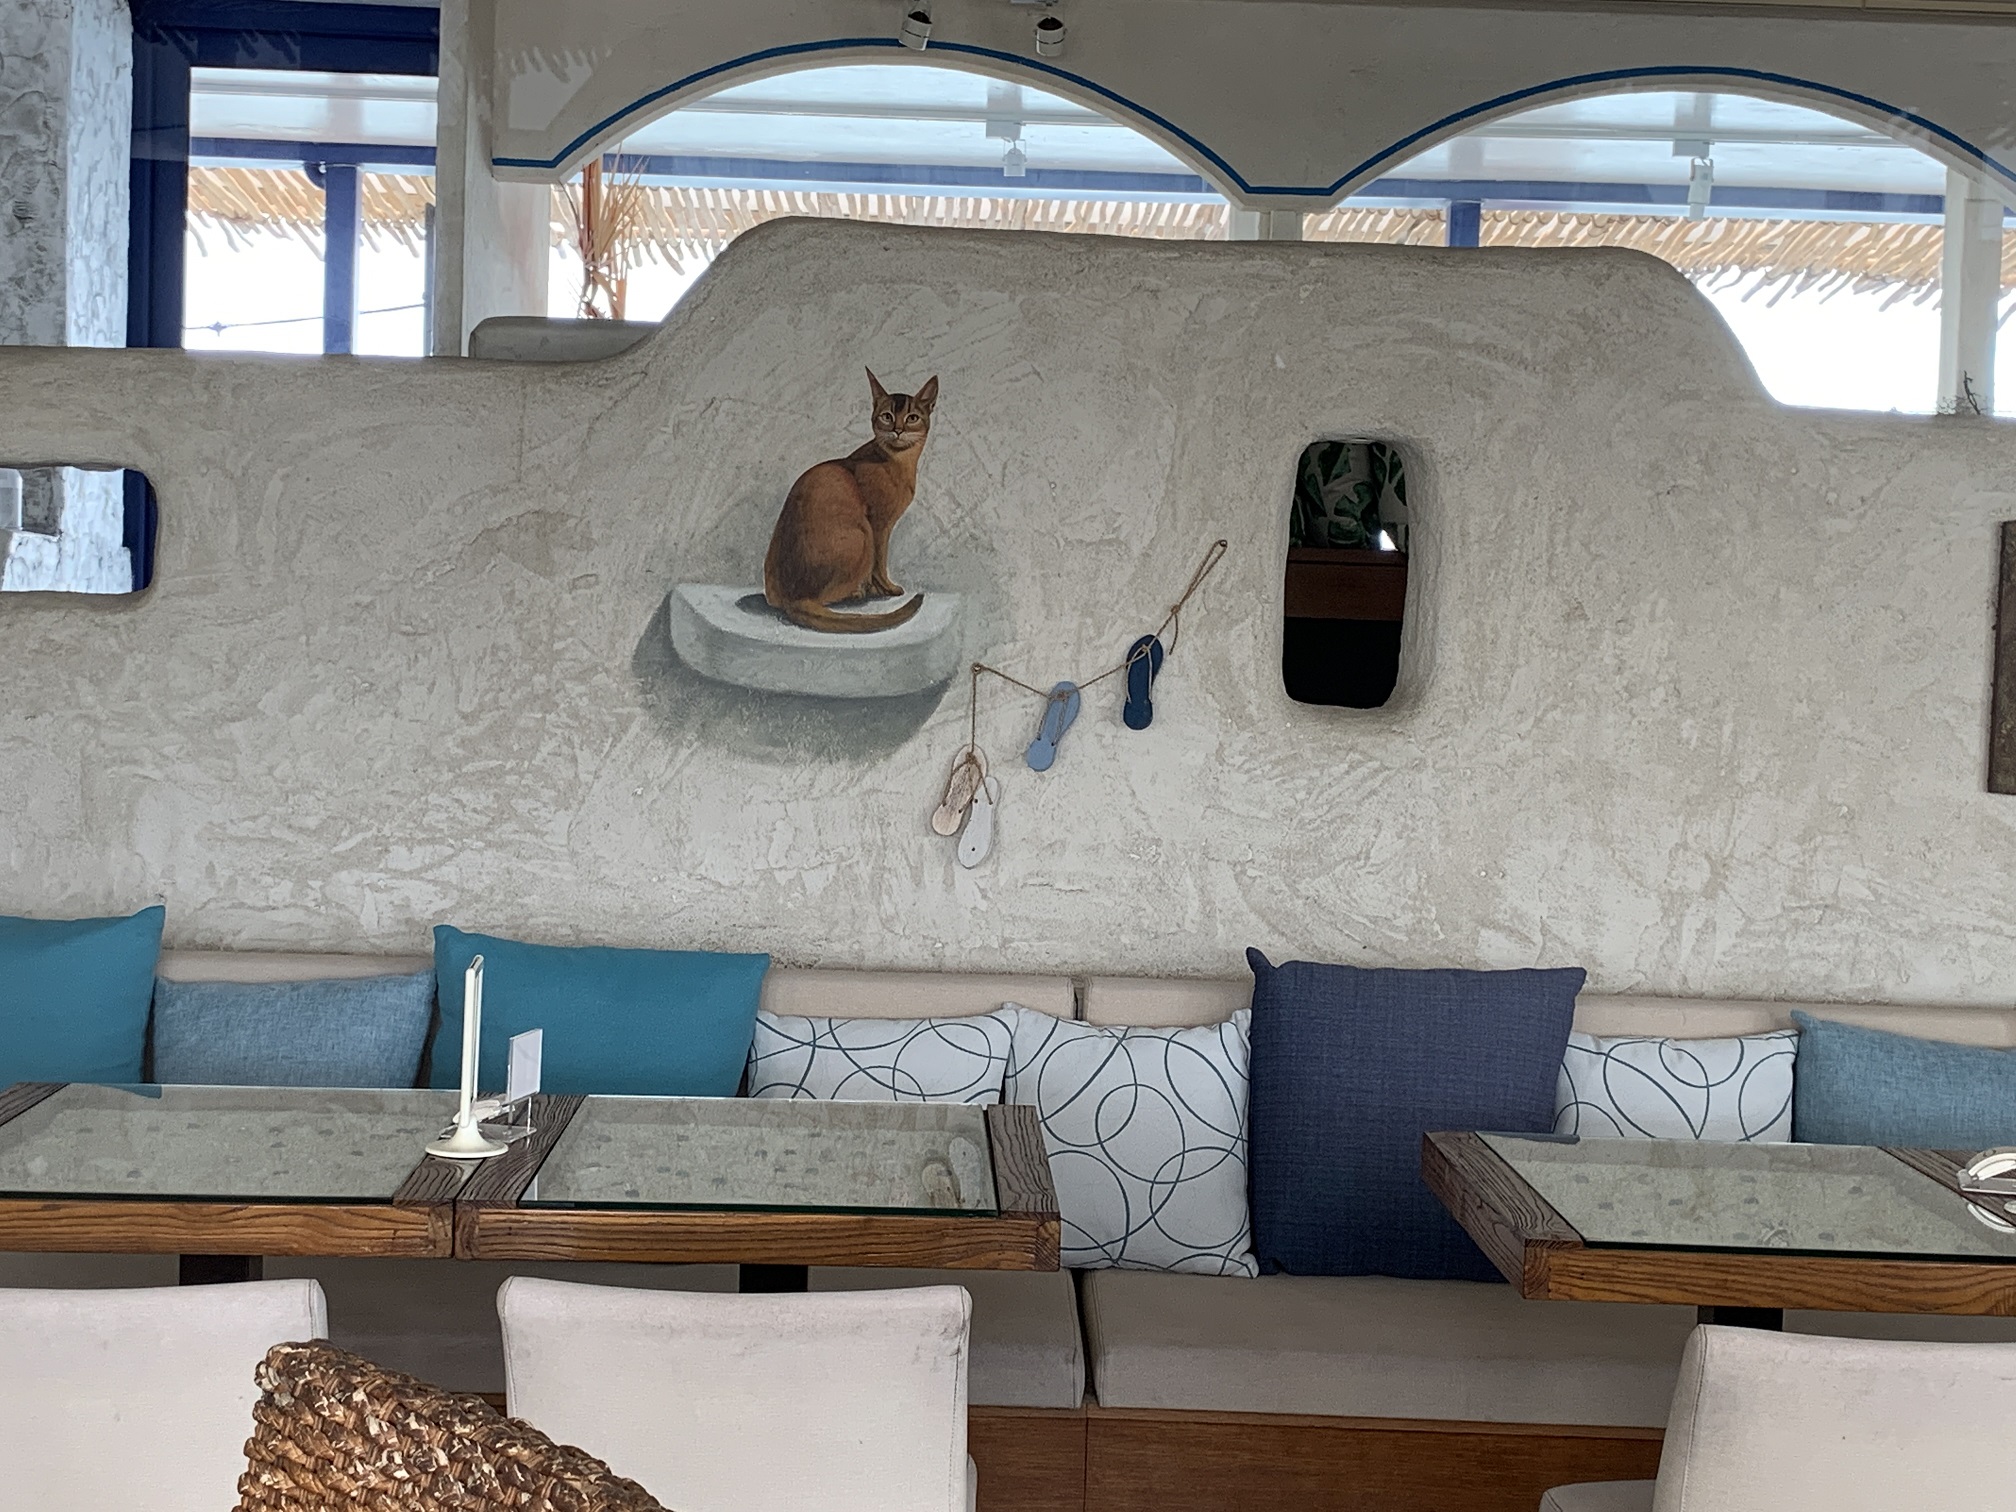 漁人水岸四季餐廳店內牆壁彩繪